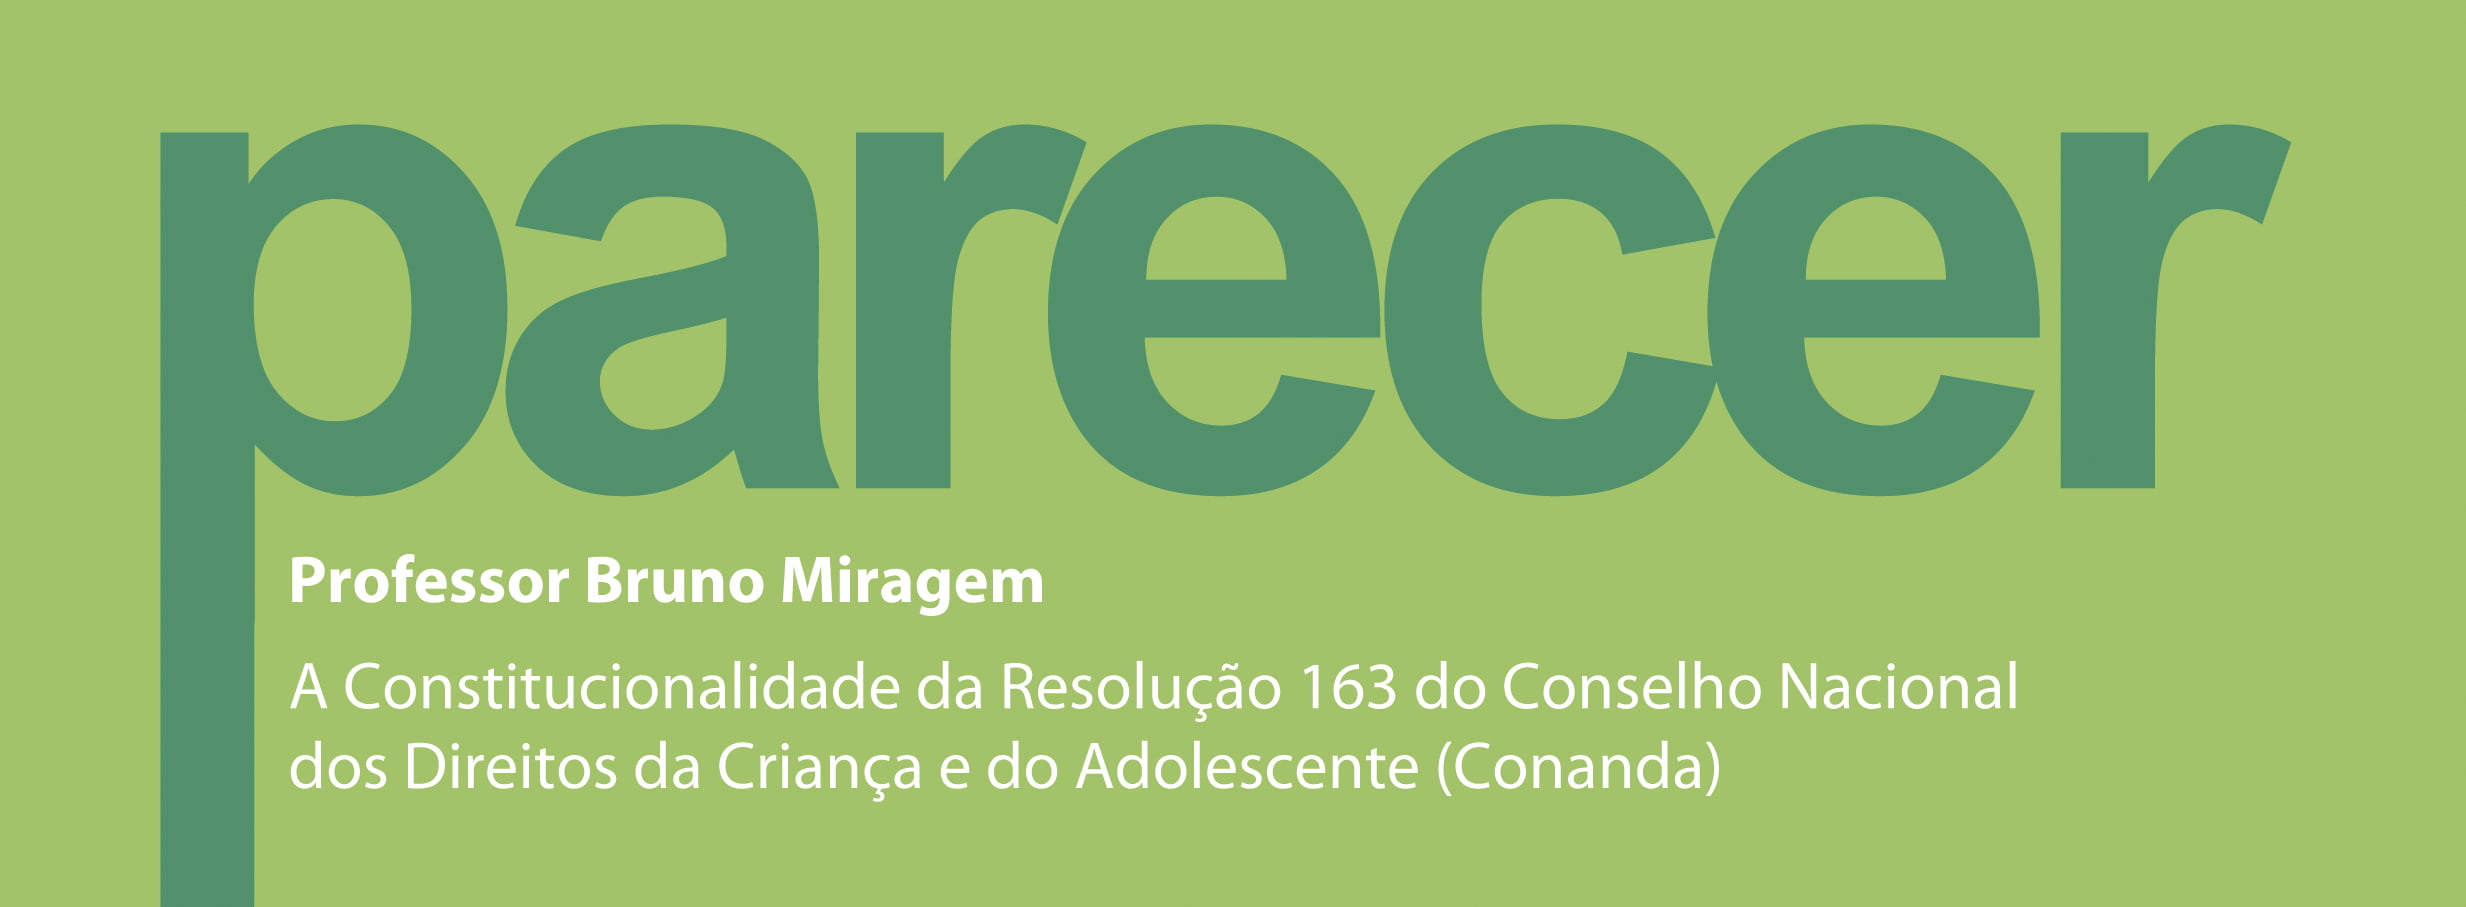 Cartaz descreve: Parecer. Professor Bruno Miragem. A constitucionalidade de Resolução 163 do Conselho Nacional dos Direitos da Criança e do Adolescente (Conanda).